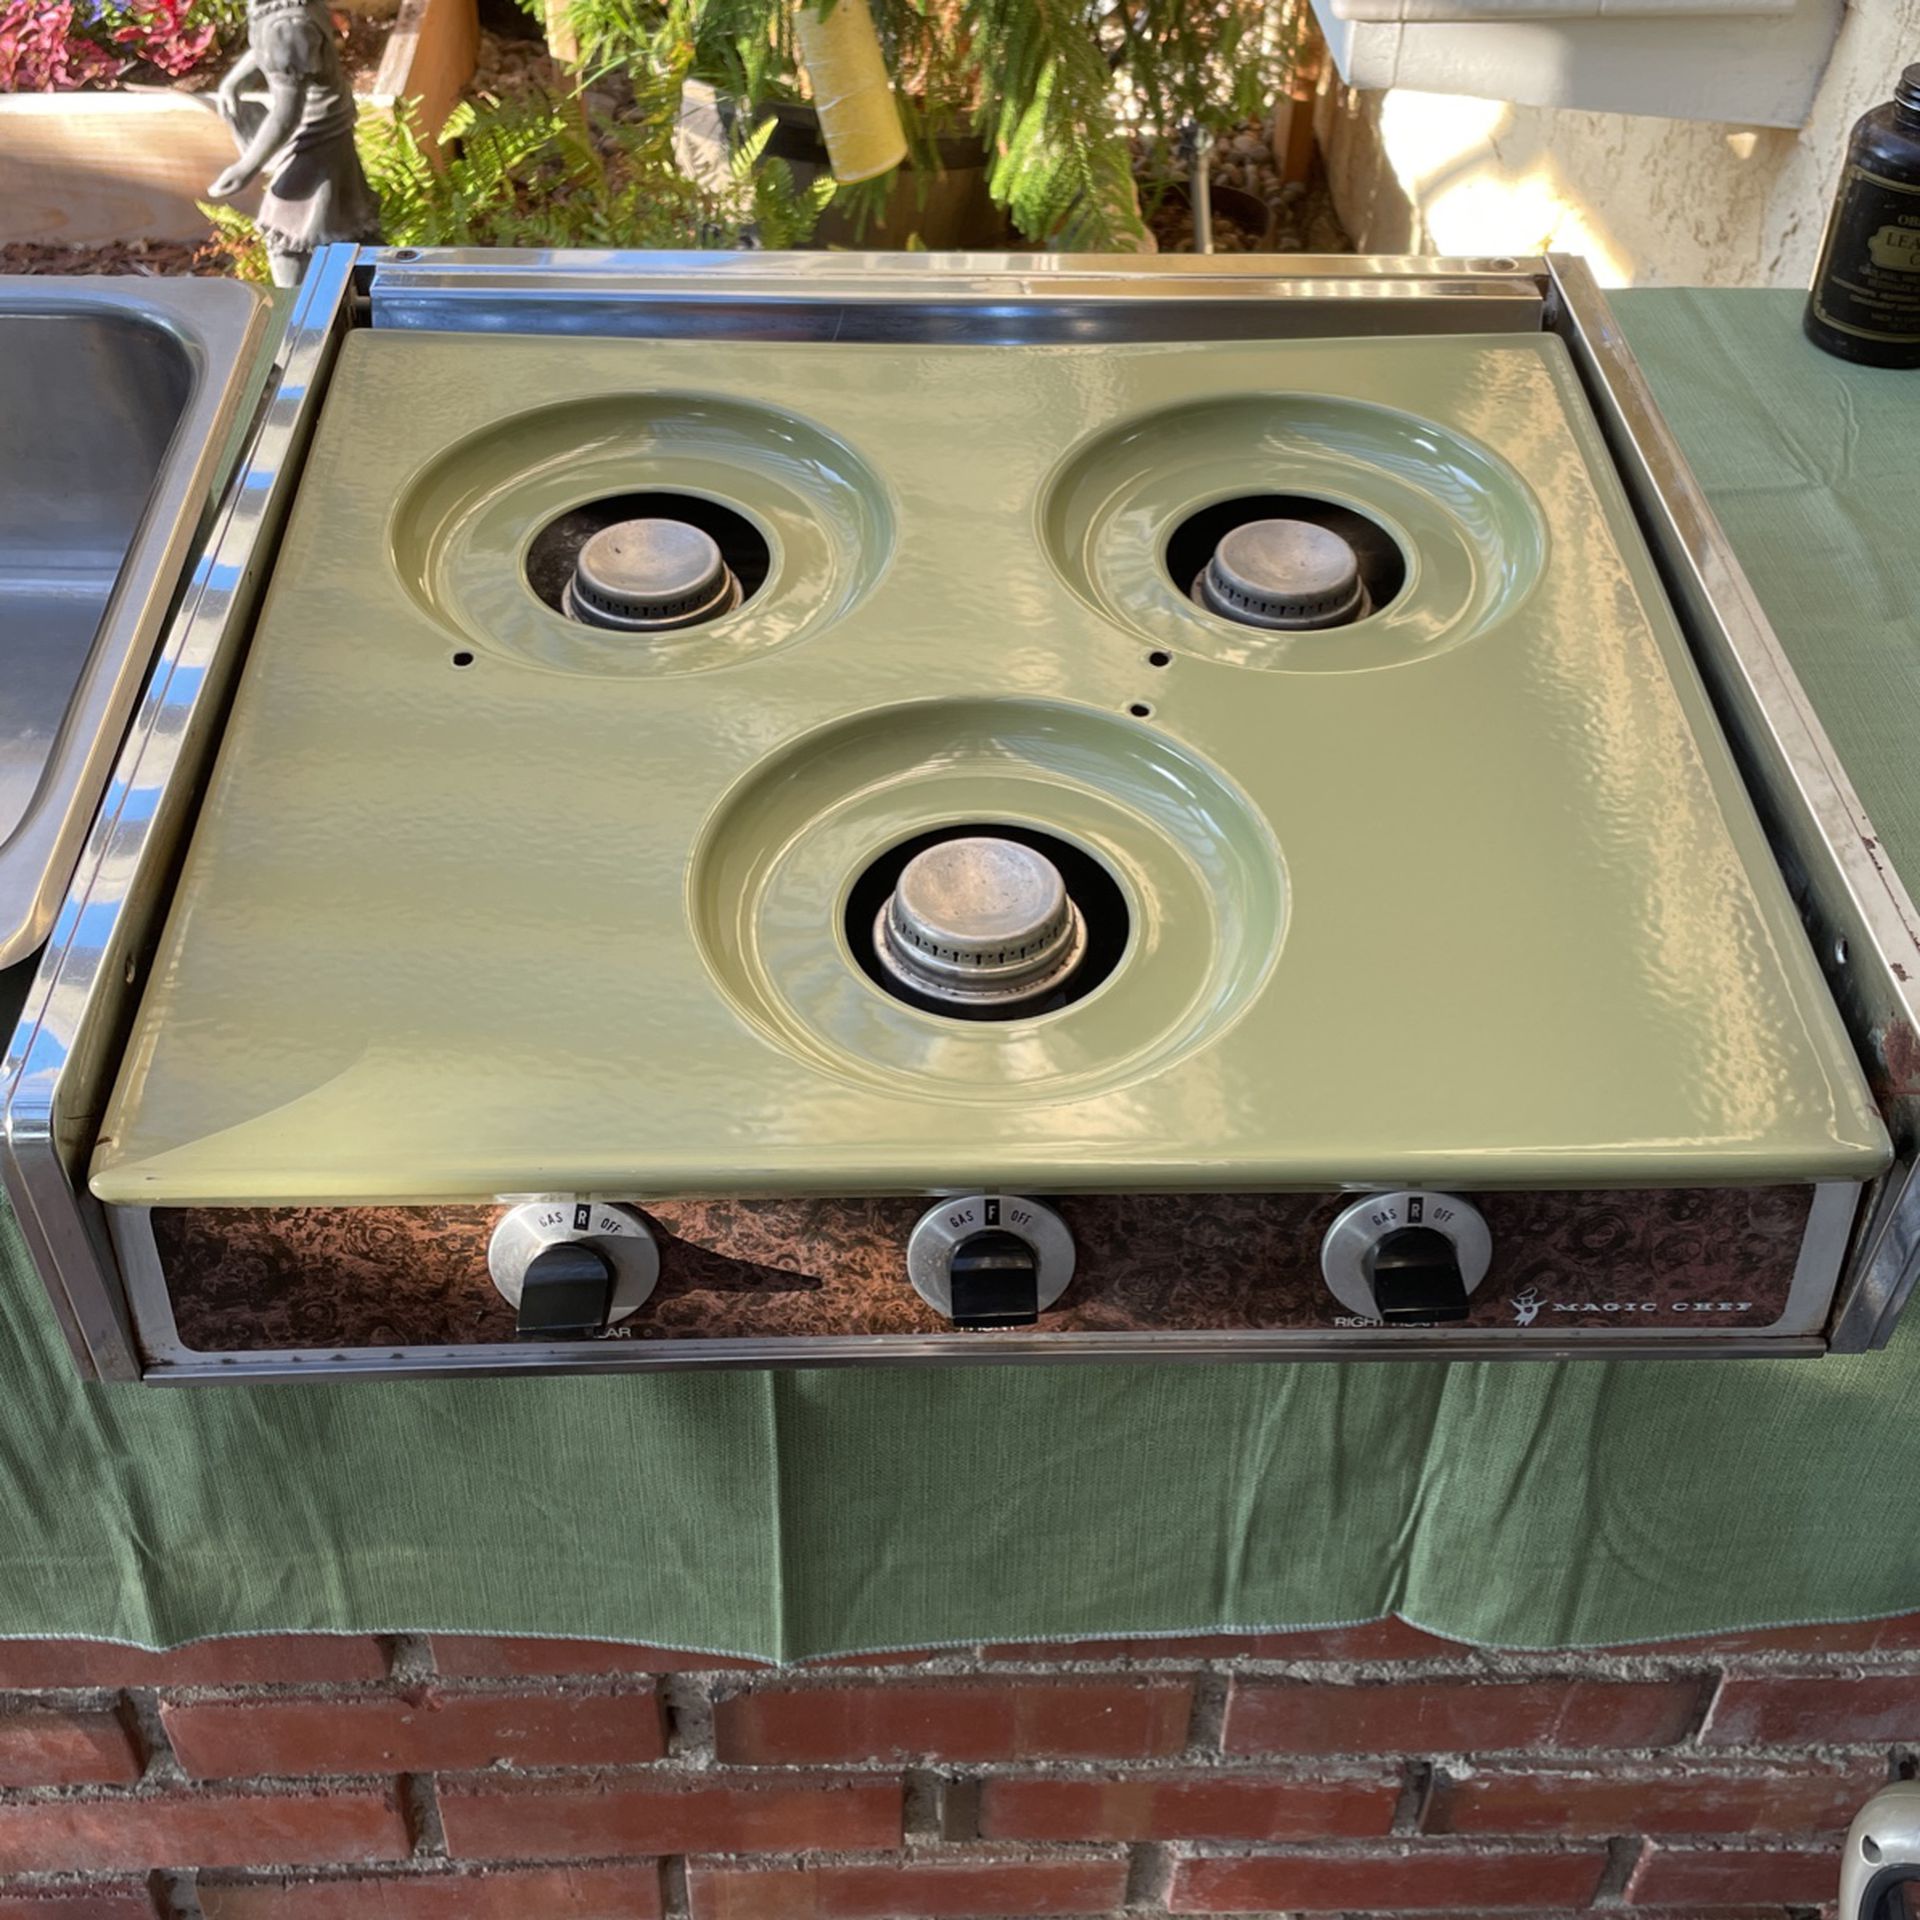 Vintage stove and sink for RV, camper van, DIY trailer 